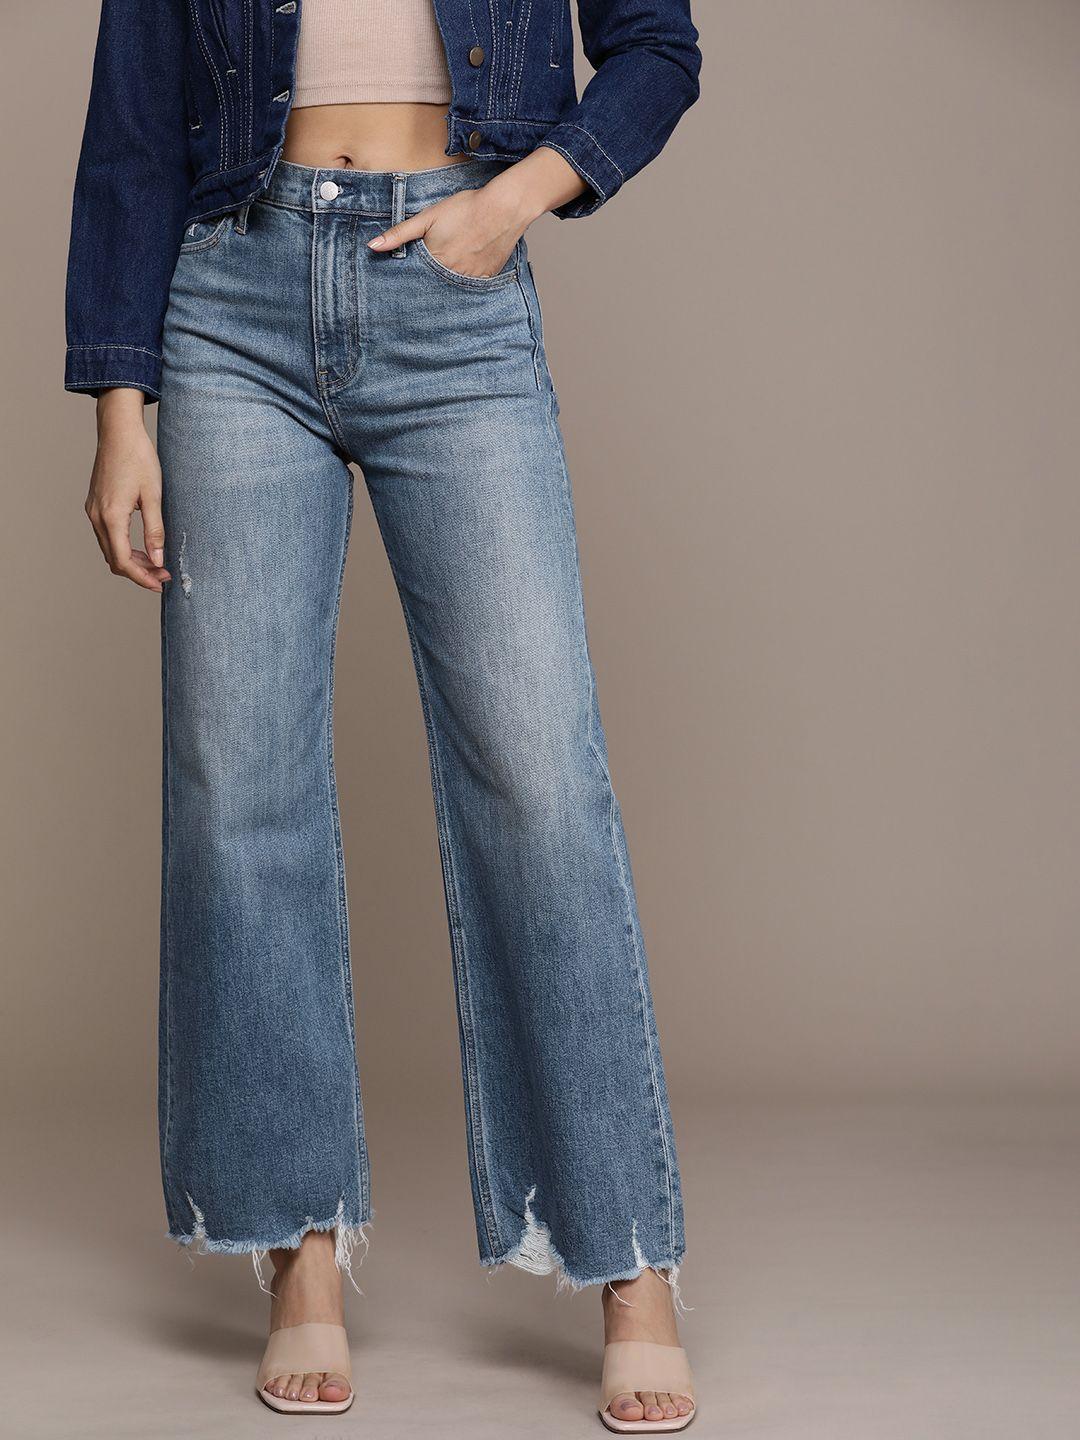 calvin klein jeans women bootcut light fade jeans